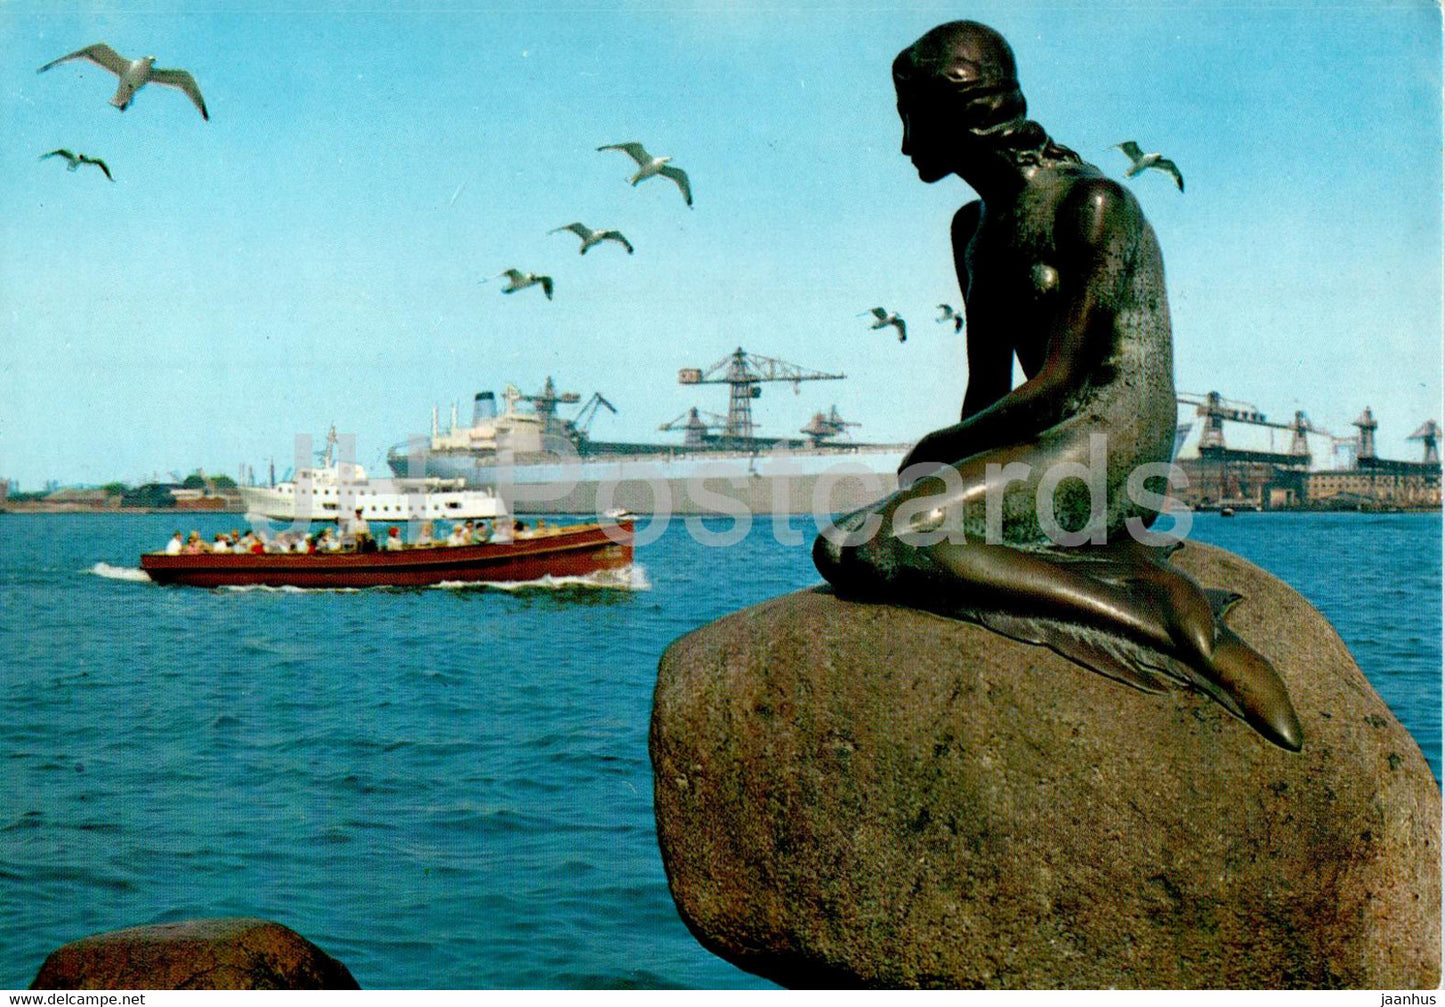 Copenhagen - Kopenhagen - Little Mermaid - Langelinie - Little Mermaid - boat - ship - T 115 - Denmark - unused - JH Postcards